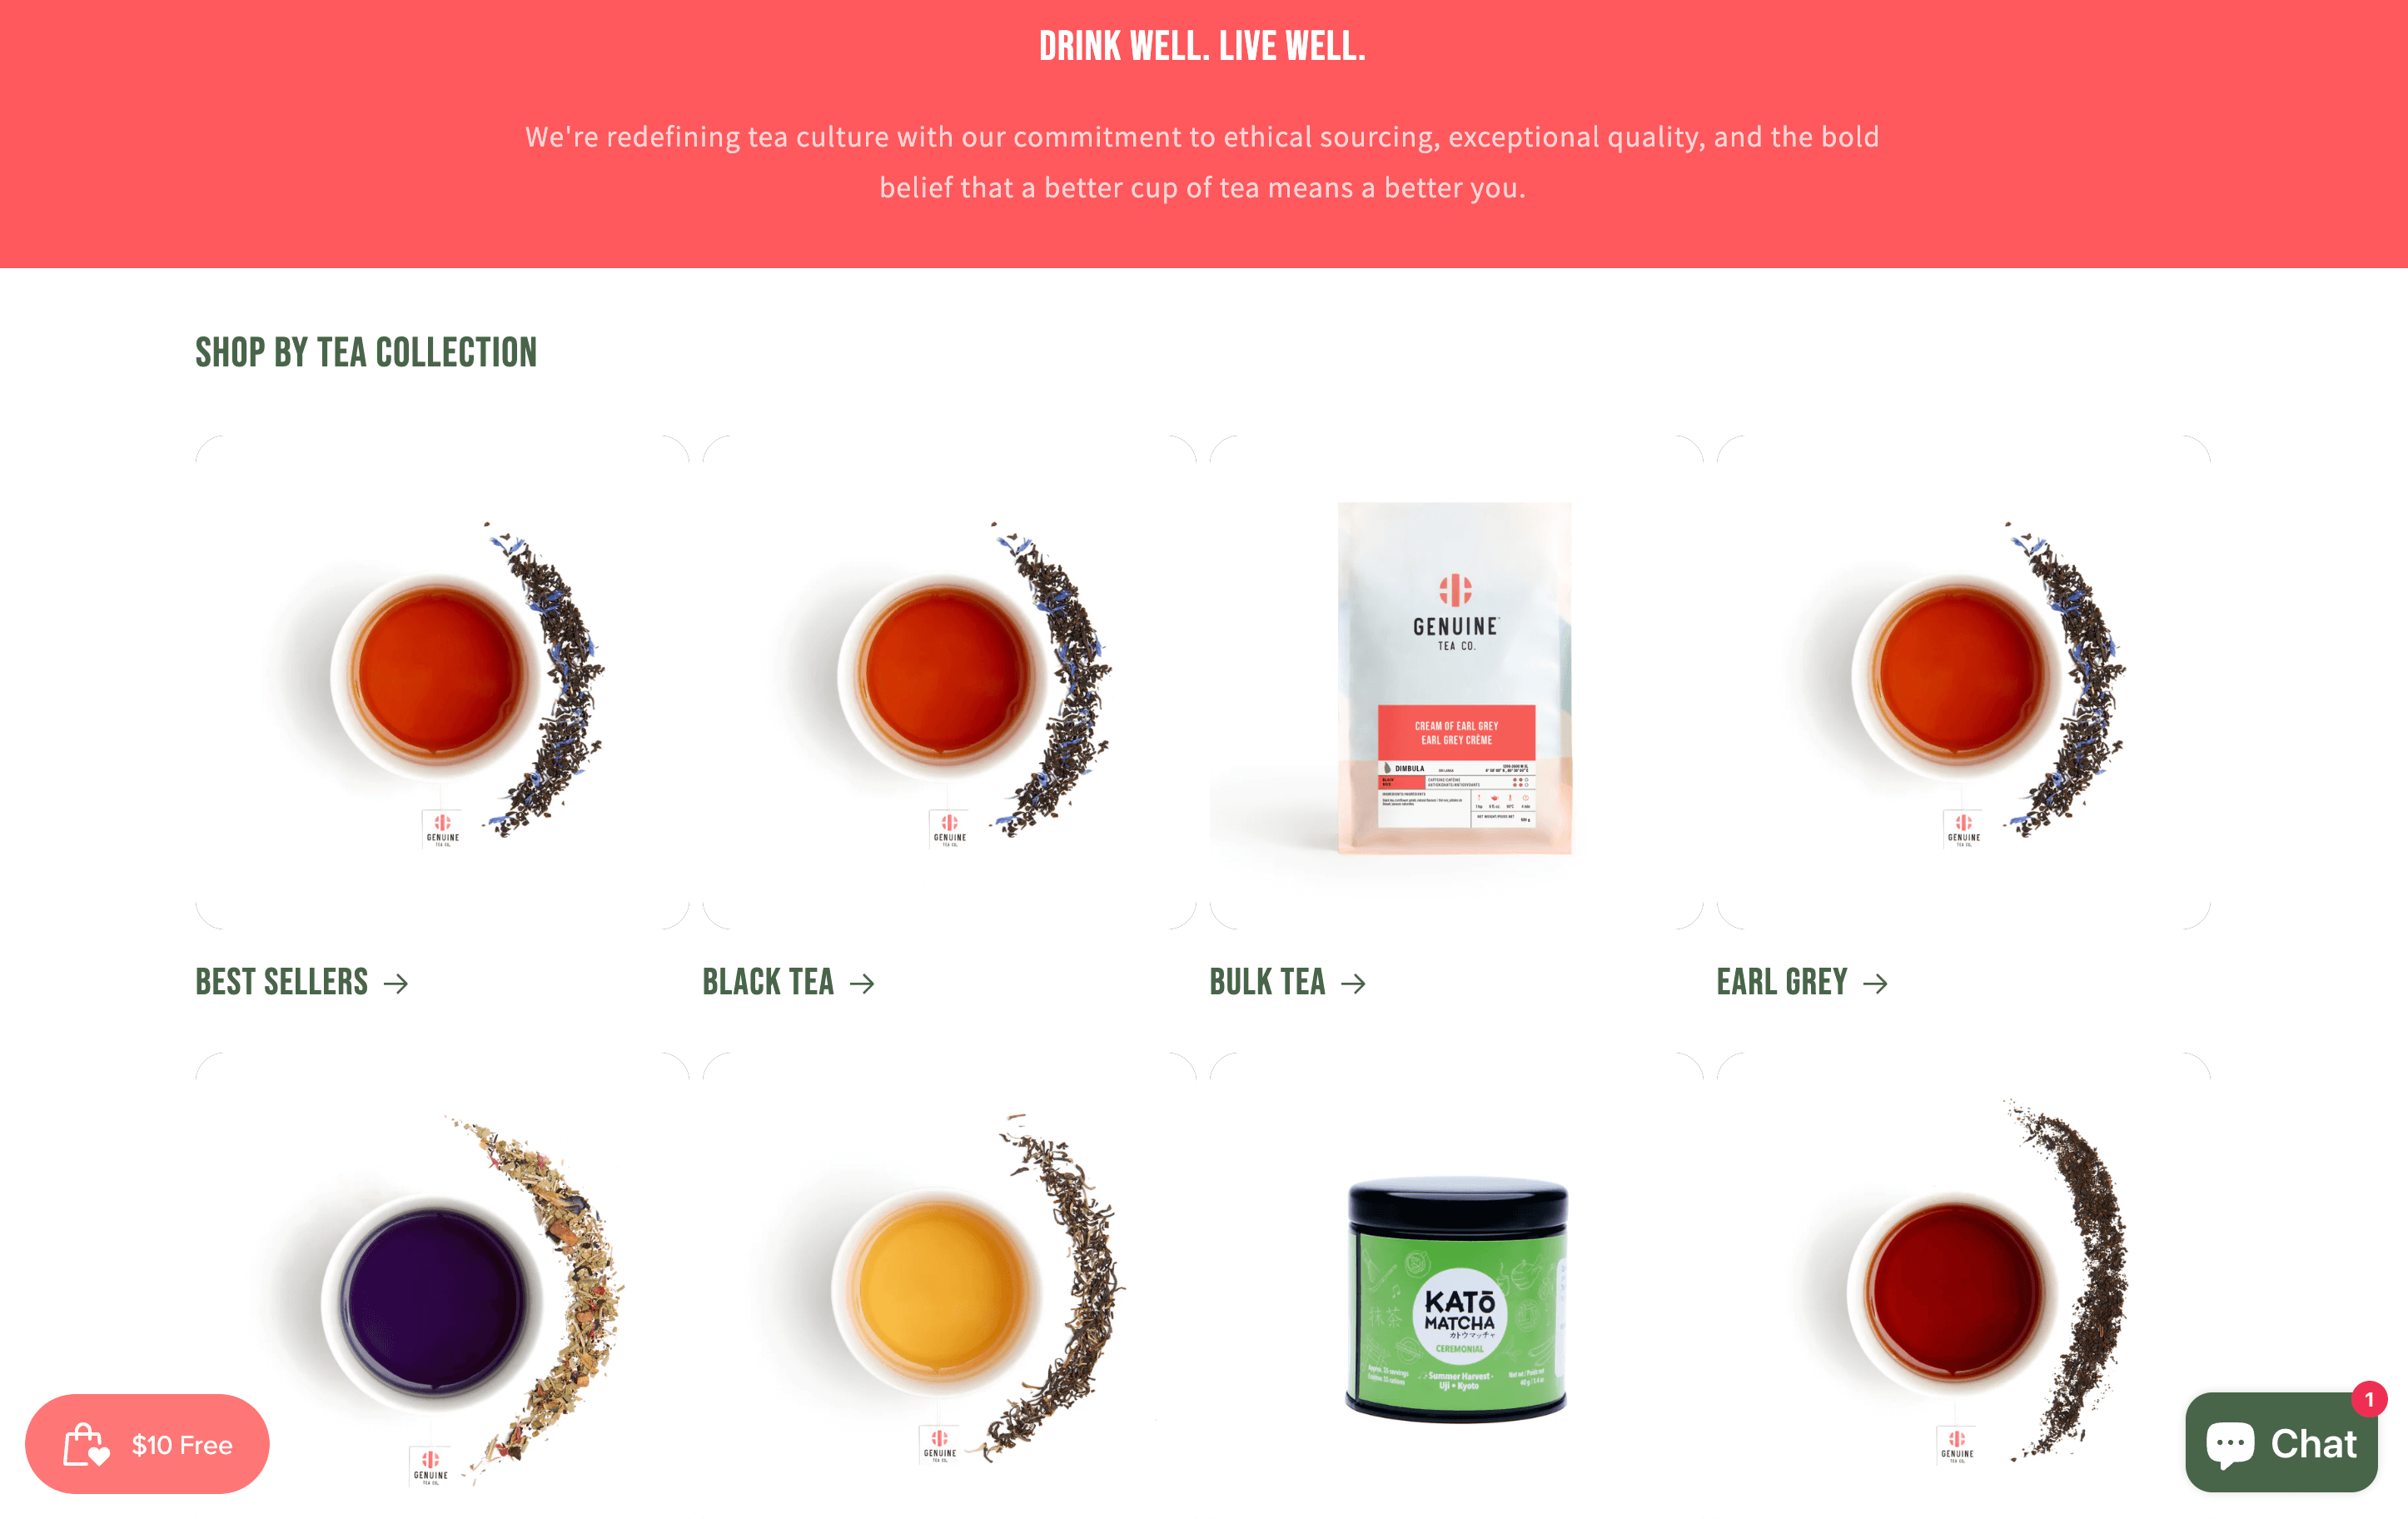 Genuine Tea 主页的屏幕截图显示了其不同的茶品种，包括红茶、散装茶、伯爵茶等。